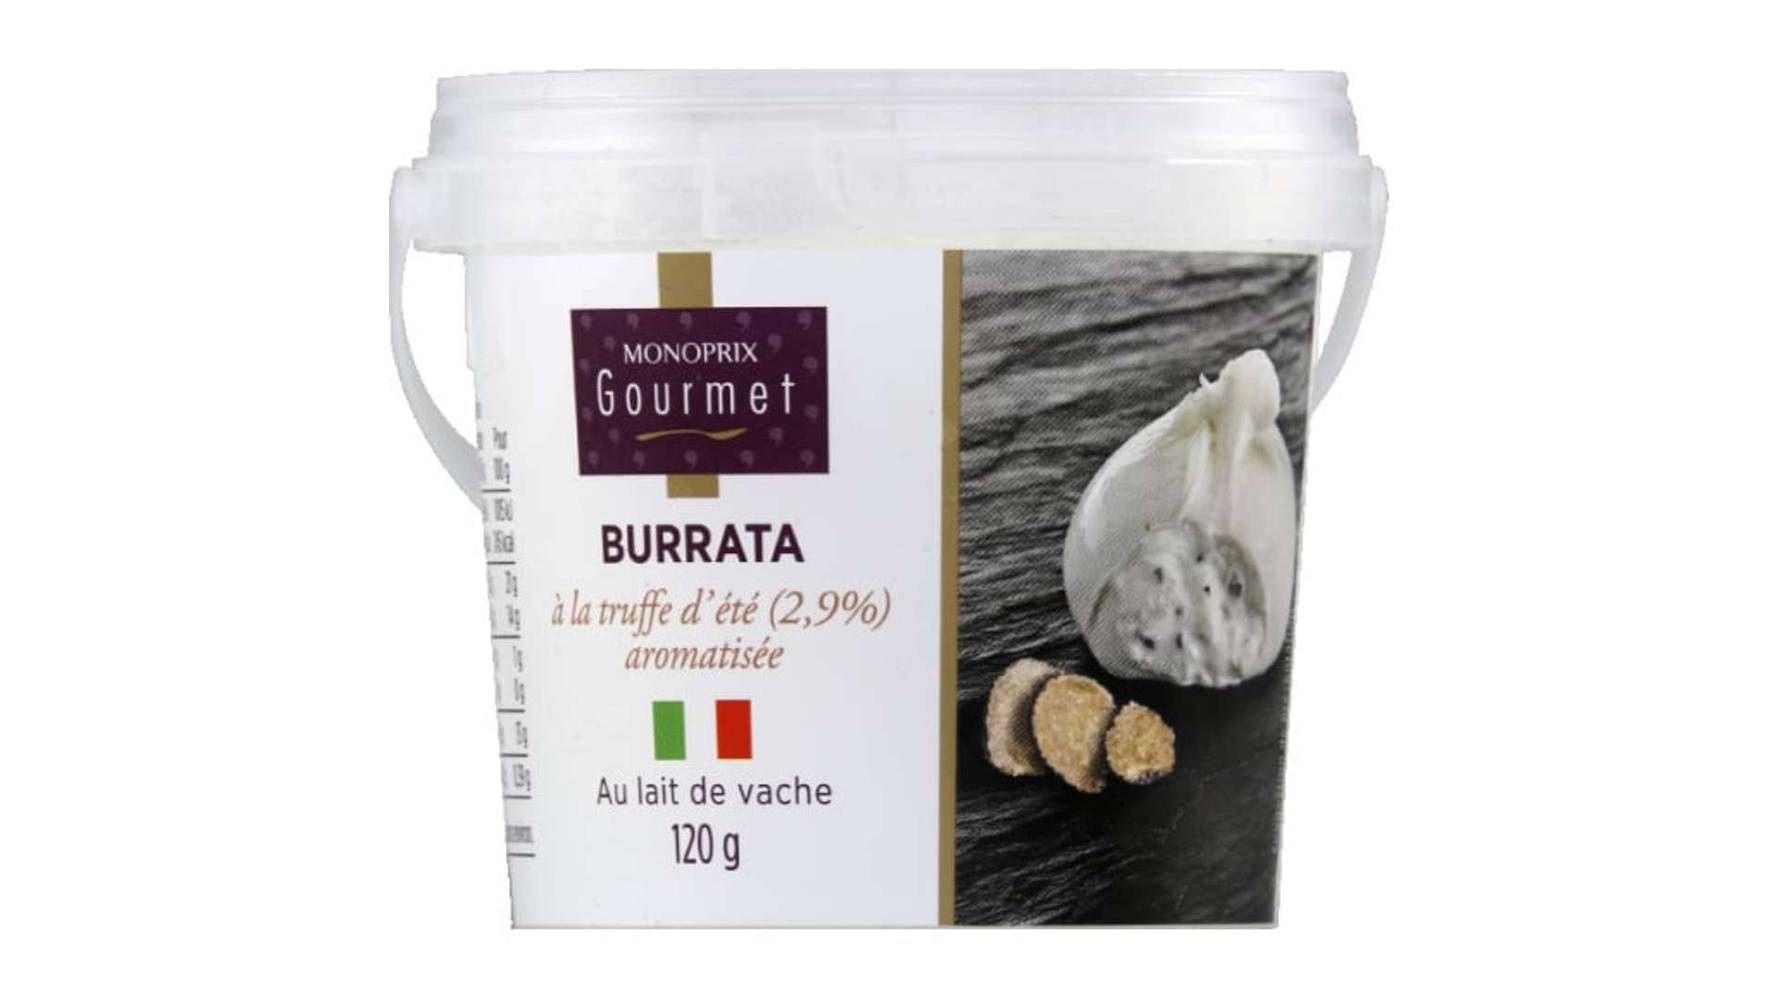 Monoprix Gourmet Burrata Truffe d'été 2,9 aromatisée Le pot de 120g